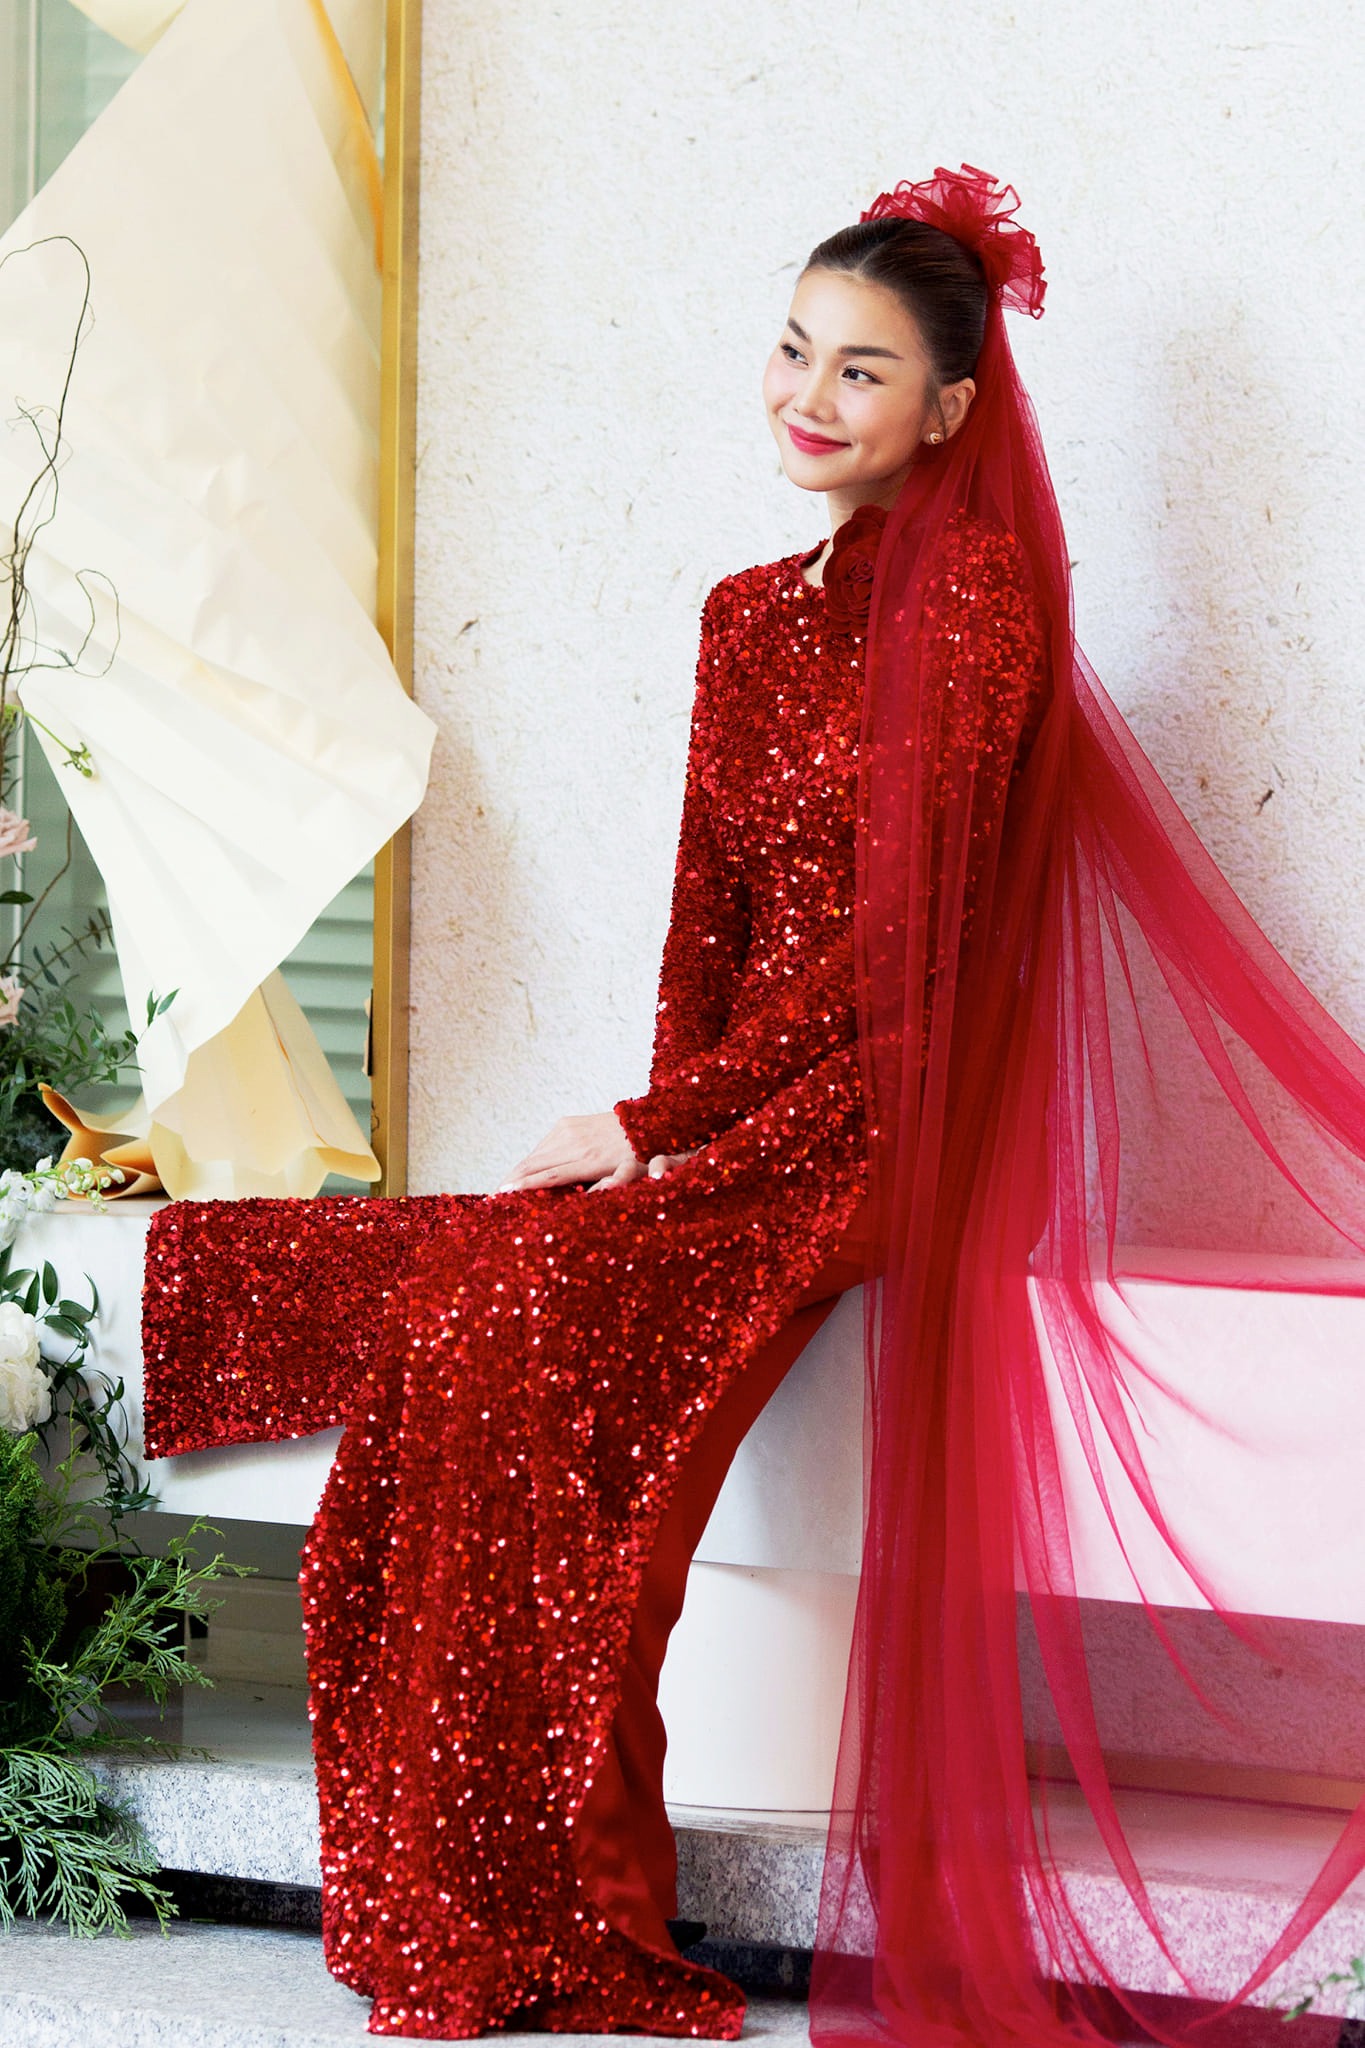 Hình ảnh từ hôn lễ của siêu mẫu Thanh Hằng, cô dâu đẹp rực rỡ trong sắc đỏ về nhà chồng - ảnh 1